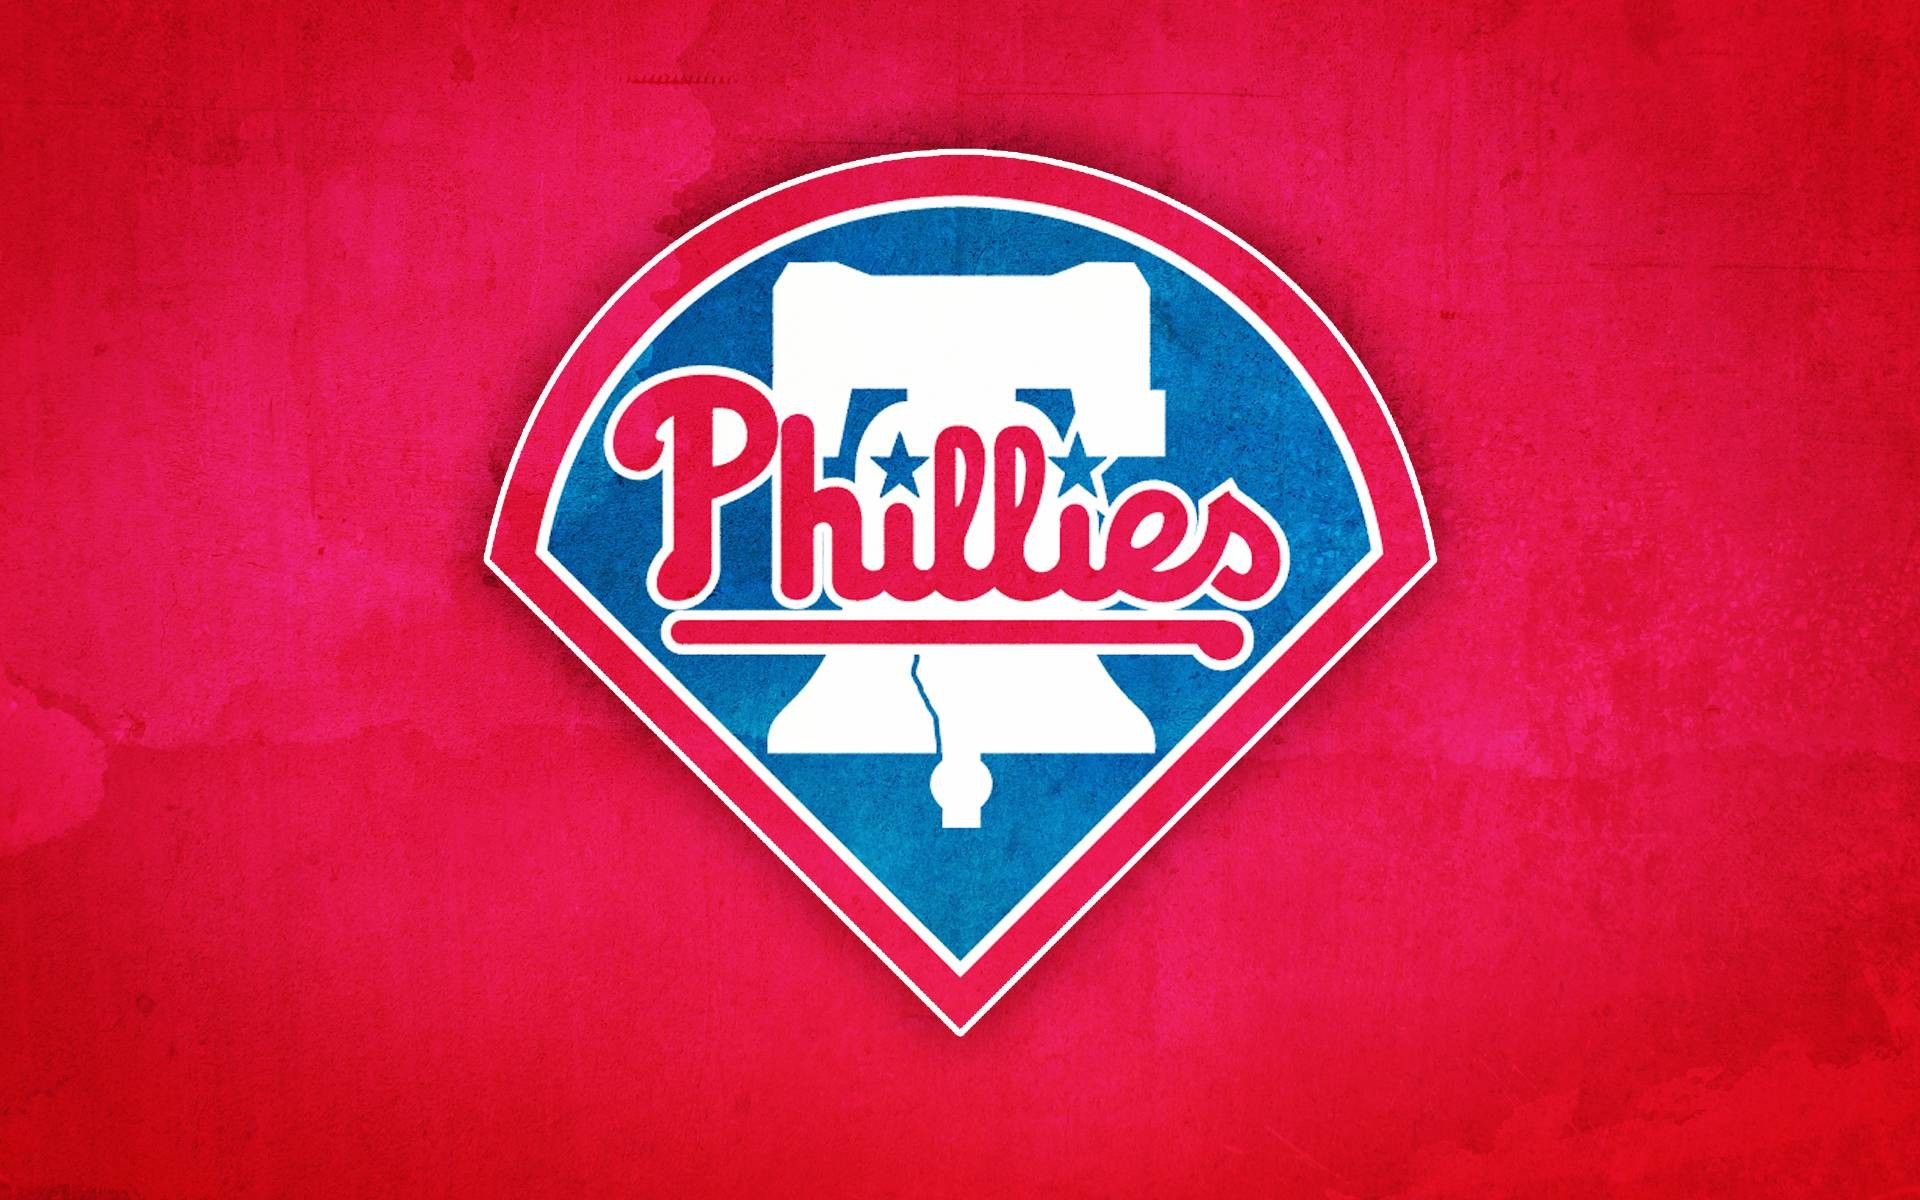 1920x1200 Philadelphia Phillies wallpapers | Philadelphia Phillies .